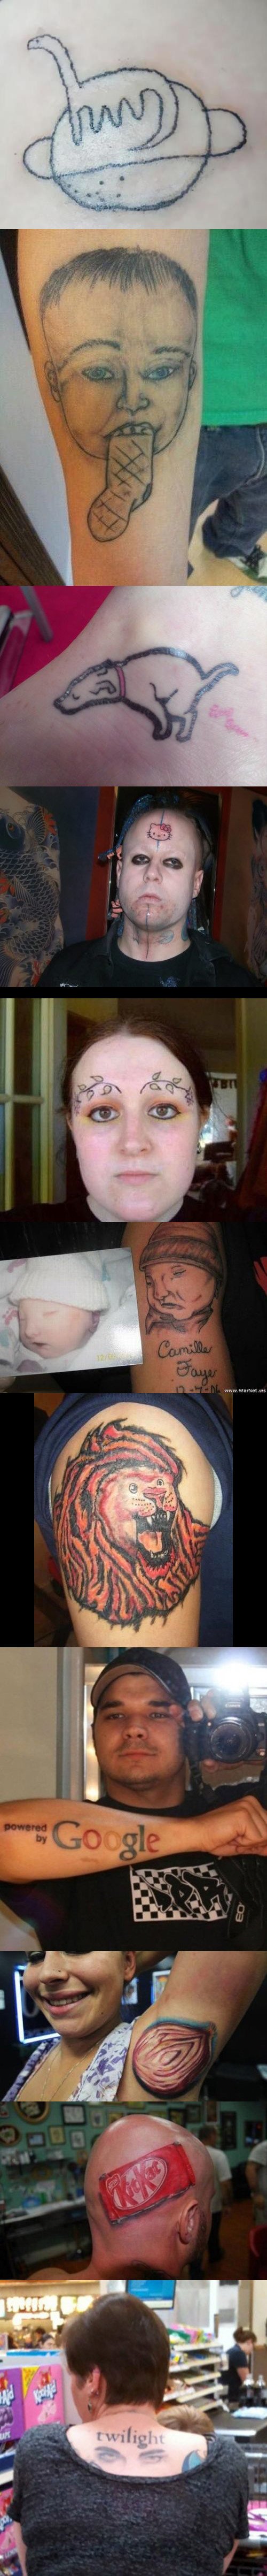 Meme_otros - Tatuajes muy lamentables que no deberían haberse hecho nunca